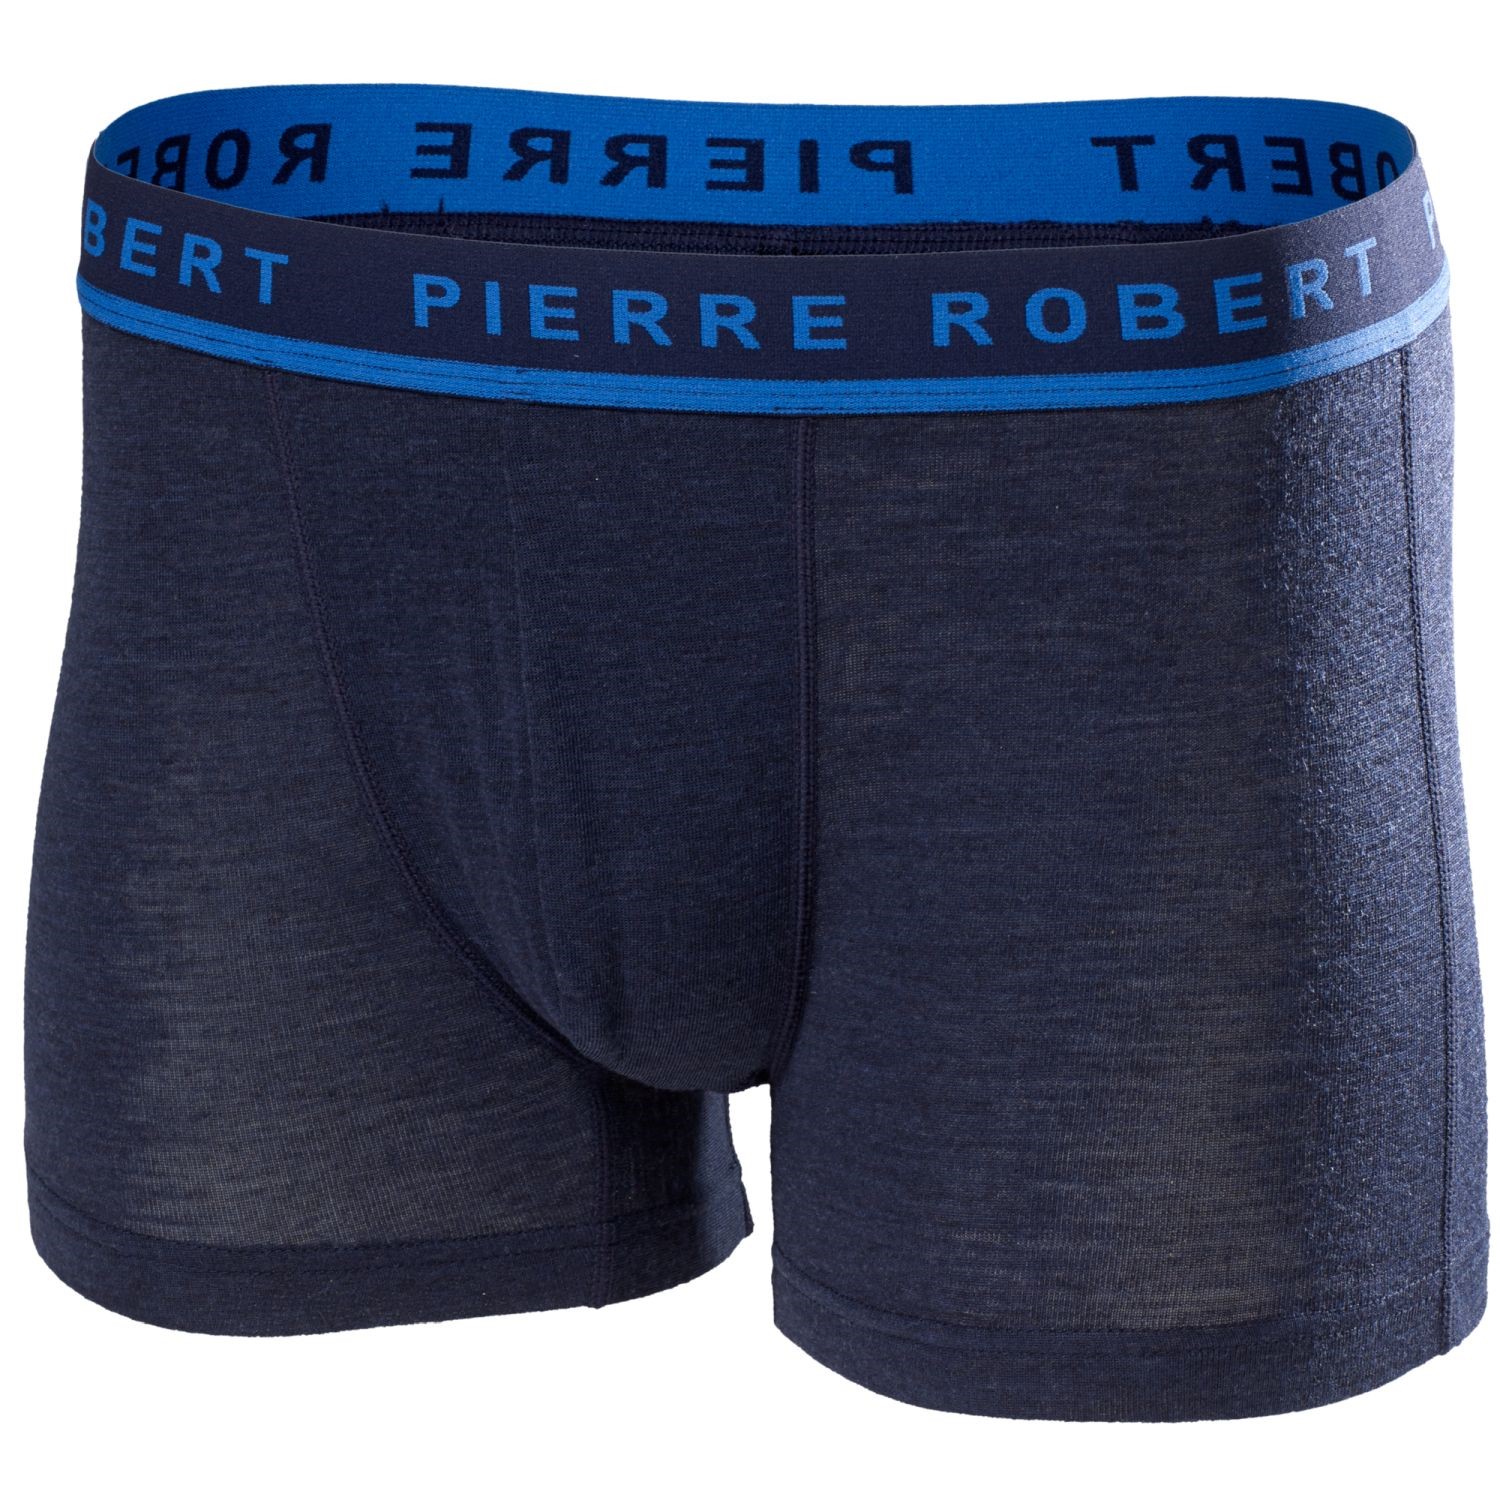 Pierre Robert For Men Sport Wool Boxer